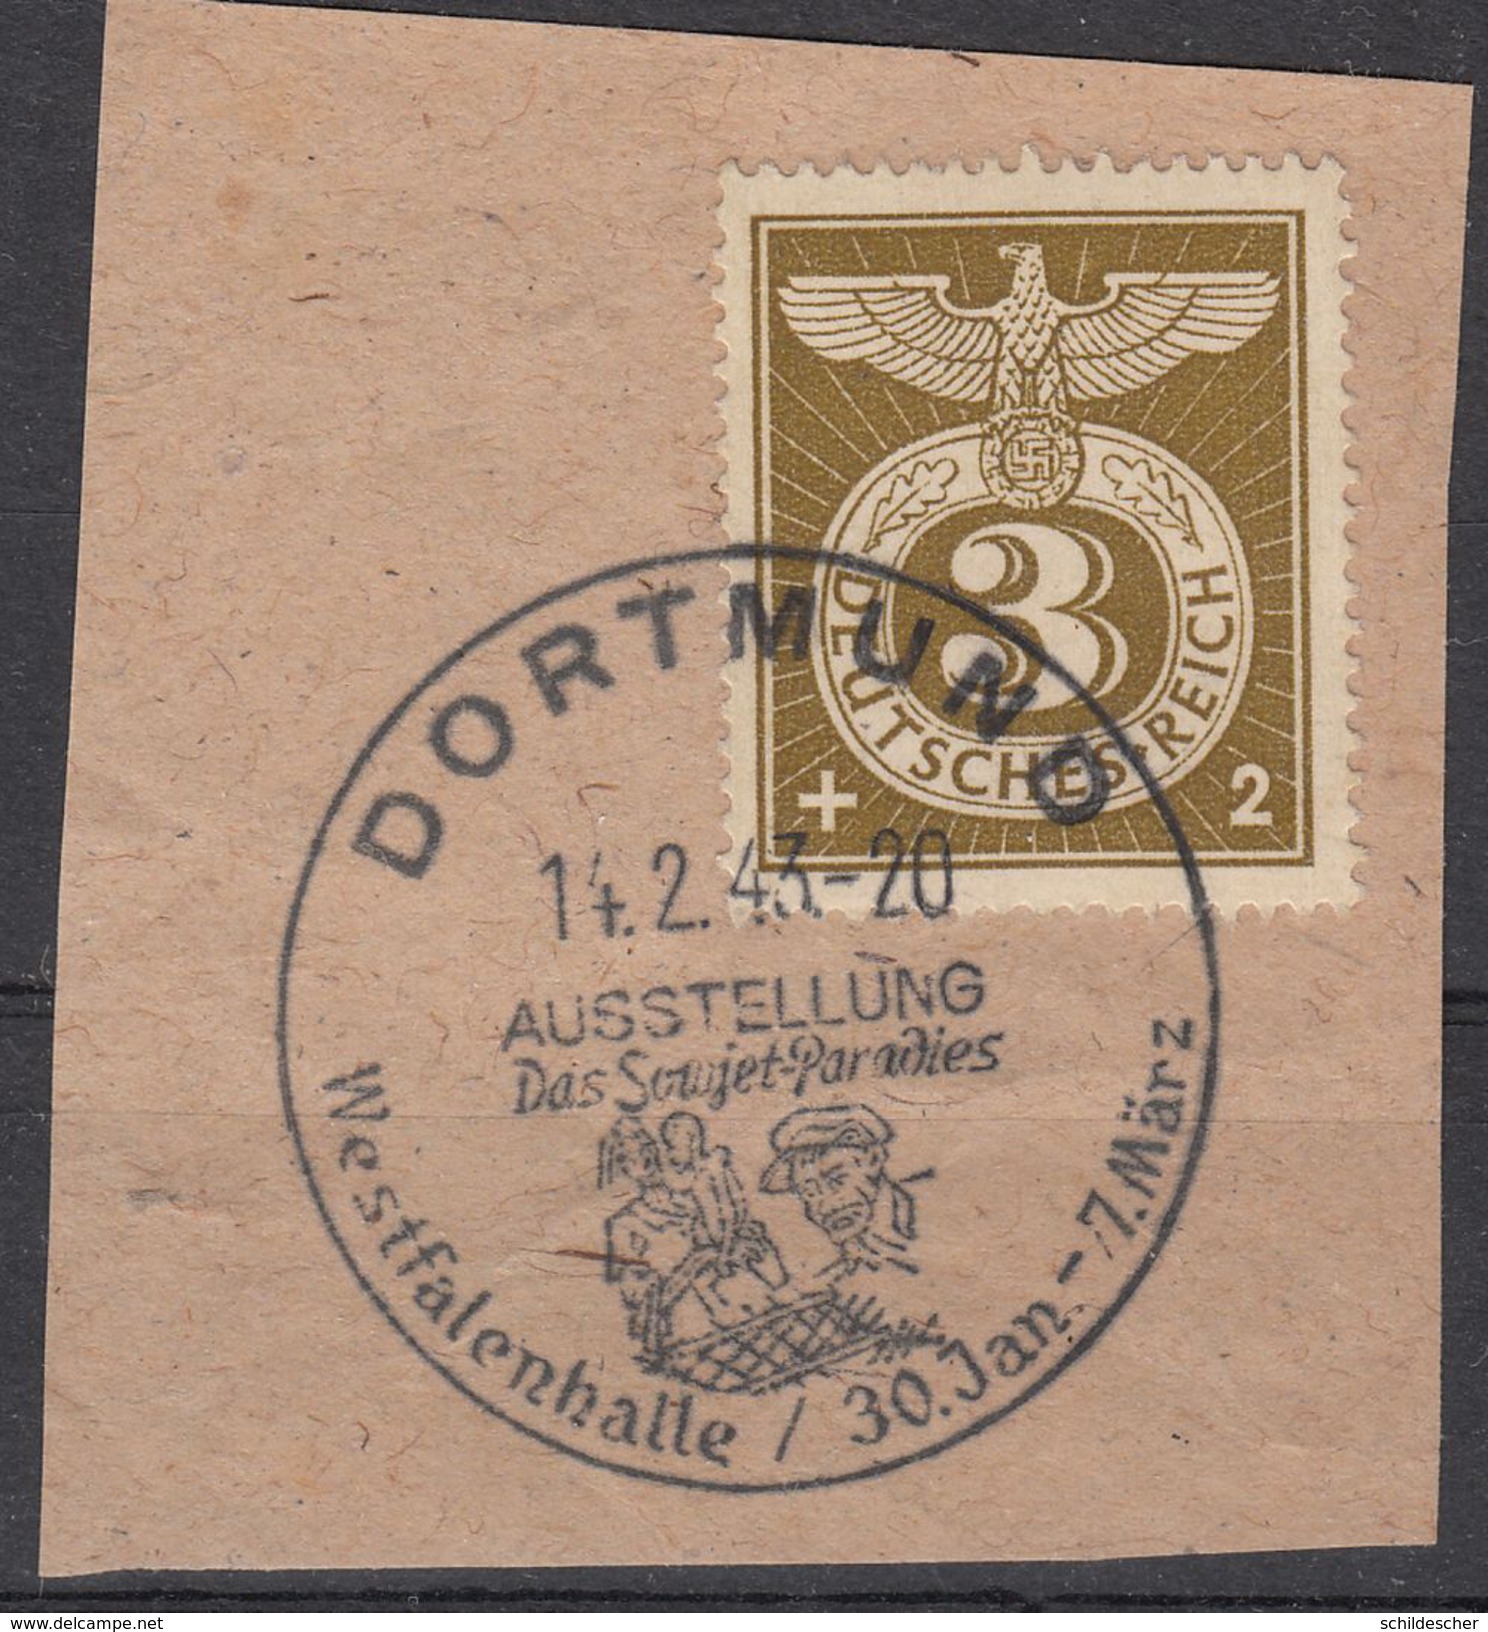 DR, 830, Sonderstempelmarke, Briefstück, Dortmund, So-Stempel, Das Sowjet- Paradies 14.2.43 - Gebraucht